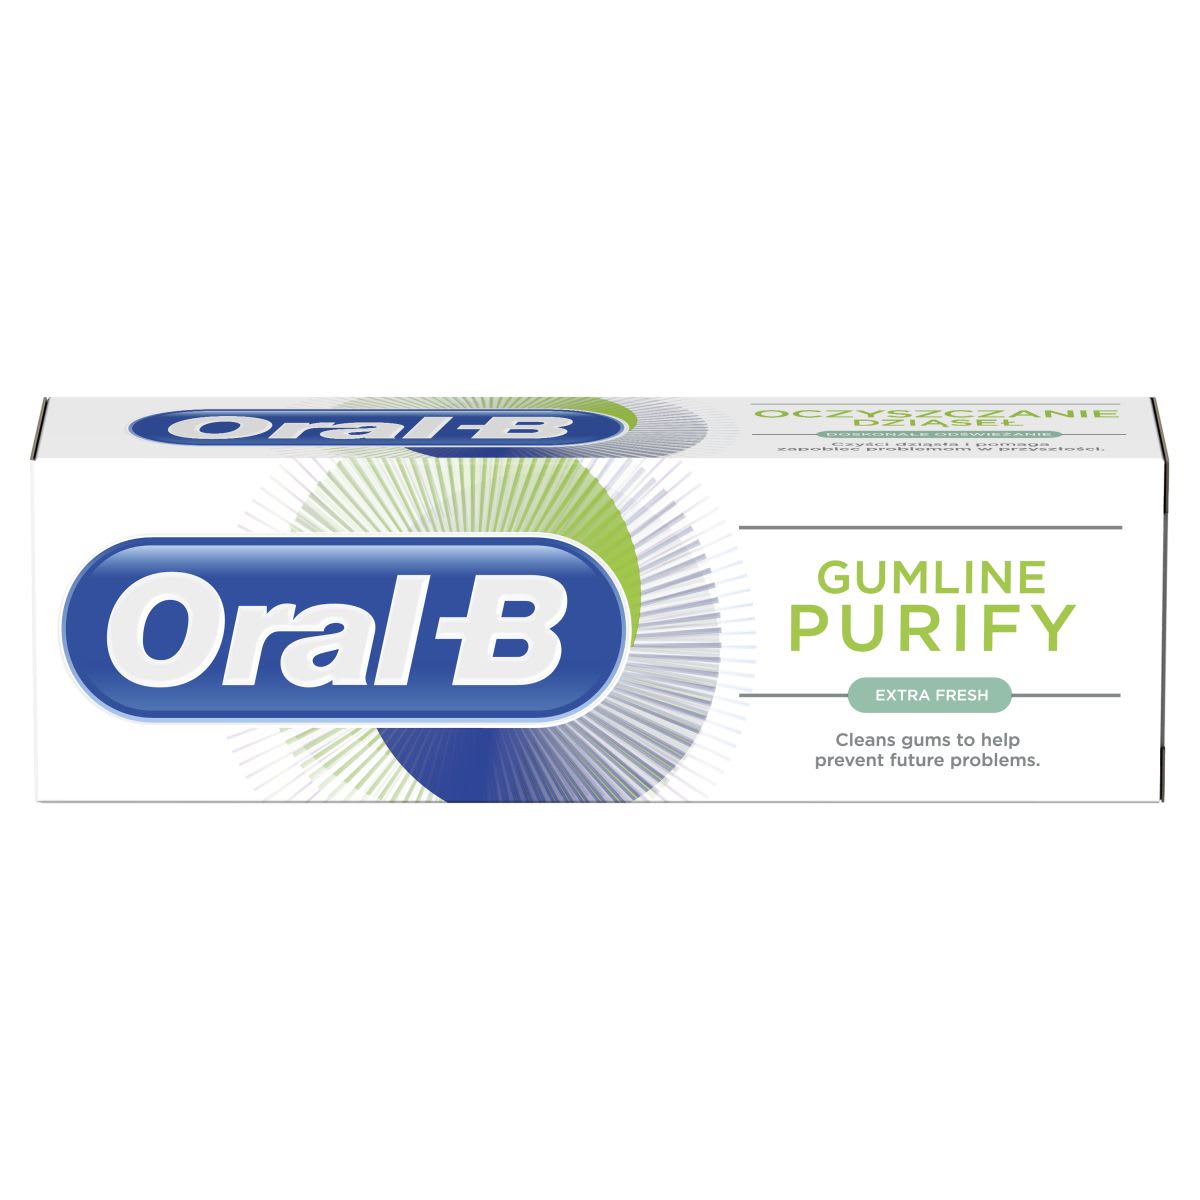 Oral-B Oczyszczanie Dziasel Super Odswiezanie Pasta Do Zebow undefined